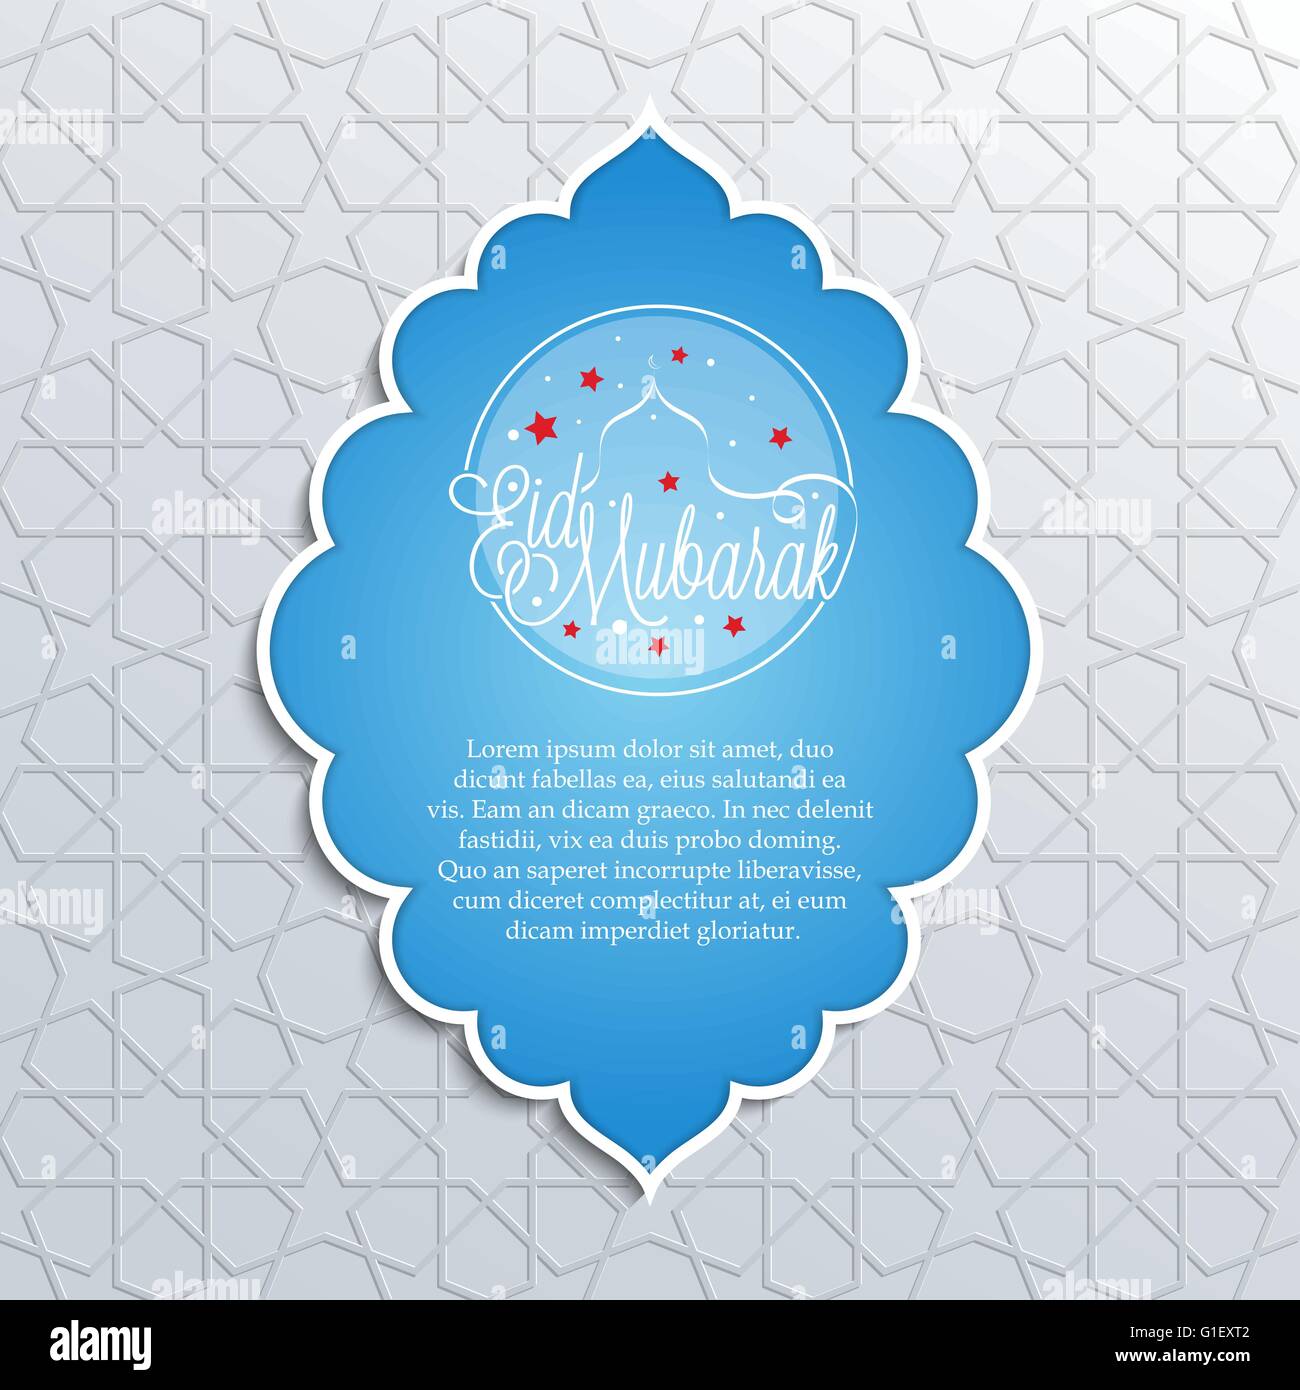 Illustrazione Vettoriale di Eid Mubarak greeting card design islamico su sfondo decorativo per il mese sacro del Ramadan Illustrazione Vettoriale